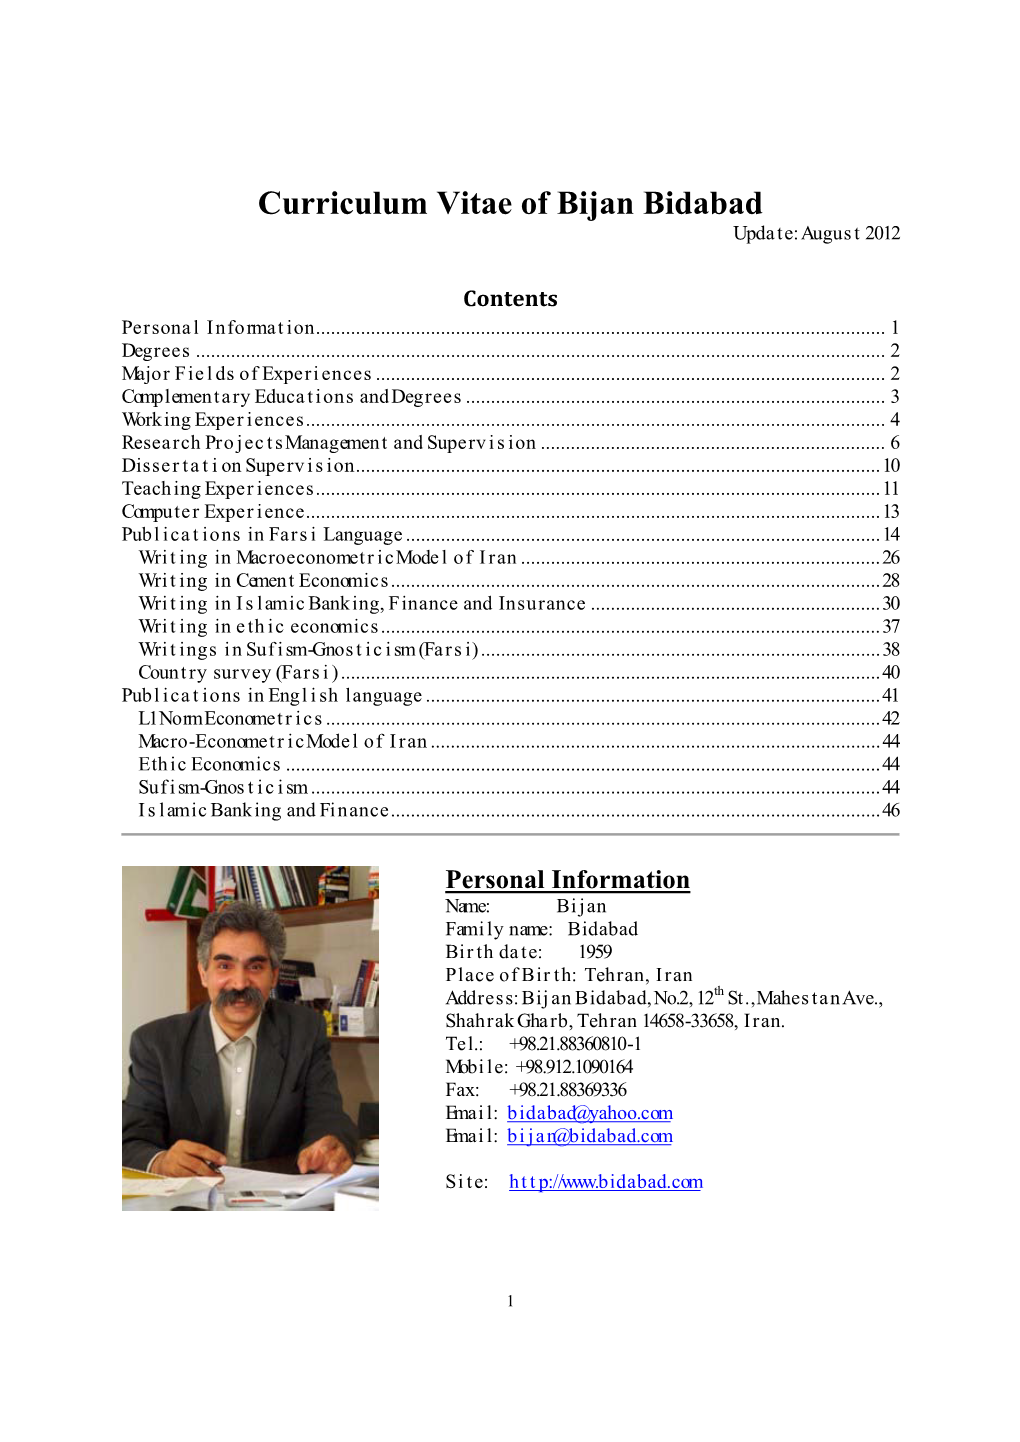 Curriculum Vitae of Bijan Bidabad Upda T E: Augus T 2012